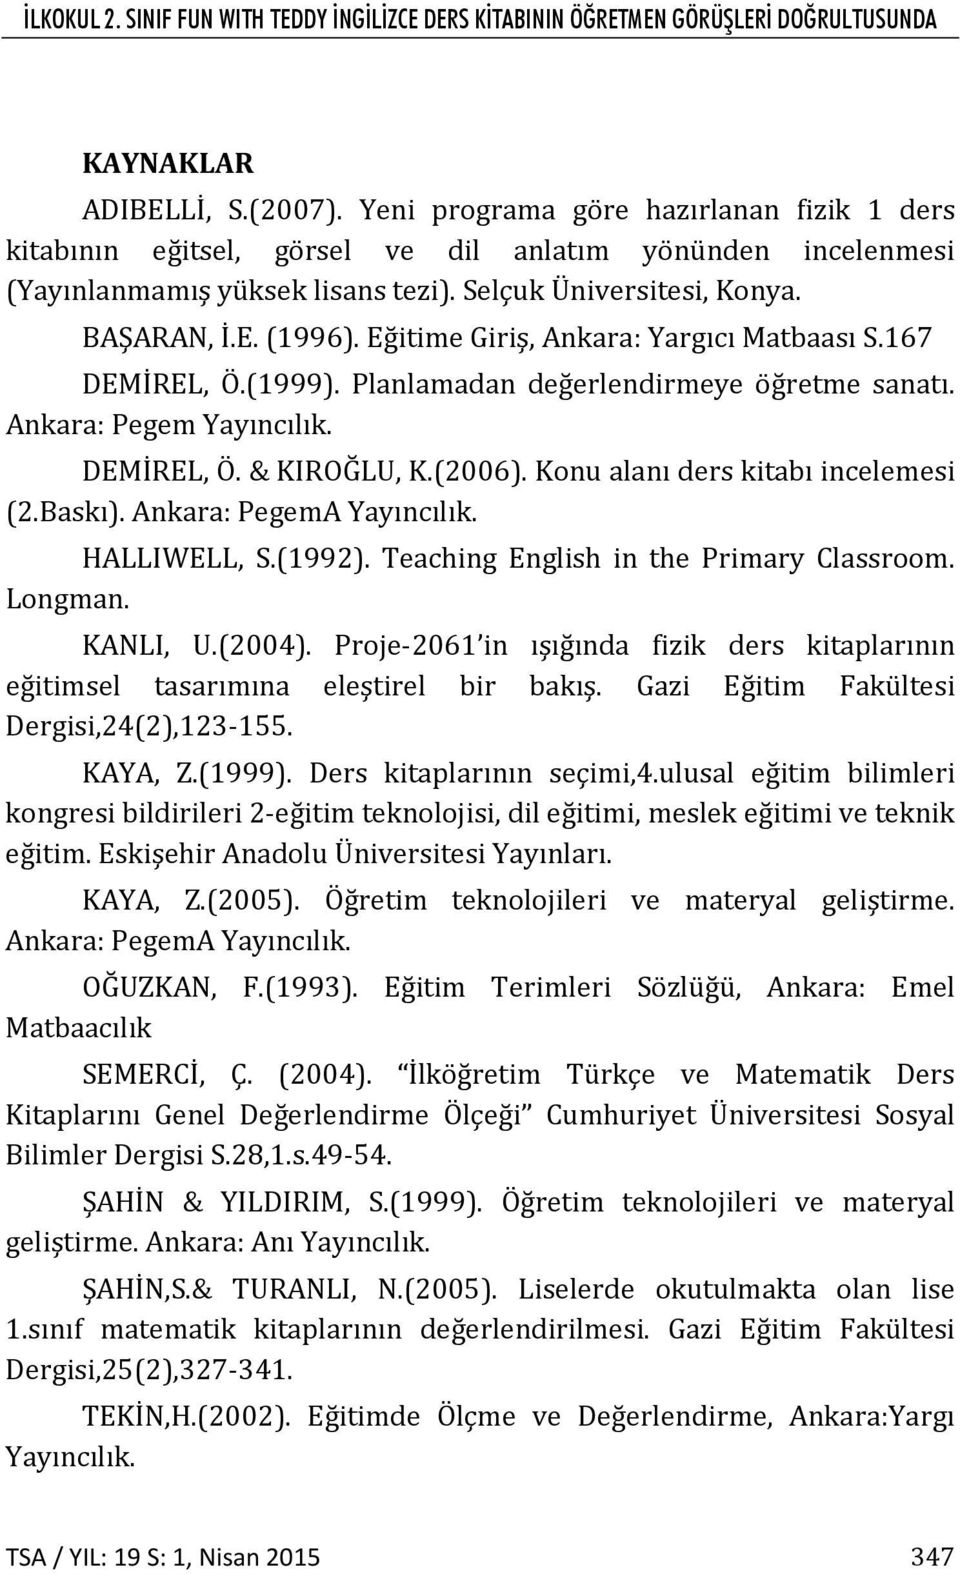 Eğitime Giriş, Ankara: Yargıcı Matbaası S.167 DEMİREL, Ö.(1999). Planlamadan değerlendirmeye öğretme sanatı. Ankara: Pegem Yayıncılık. DEMİREL, Ö. & KIROĞLU, K.(2006).